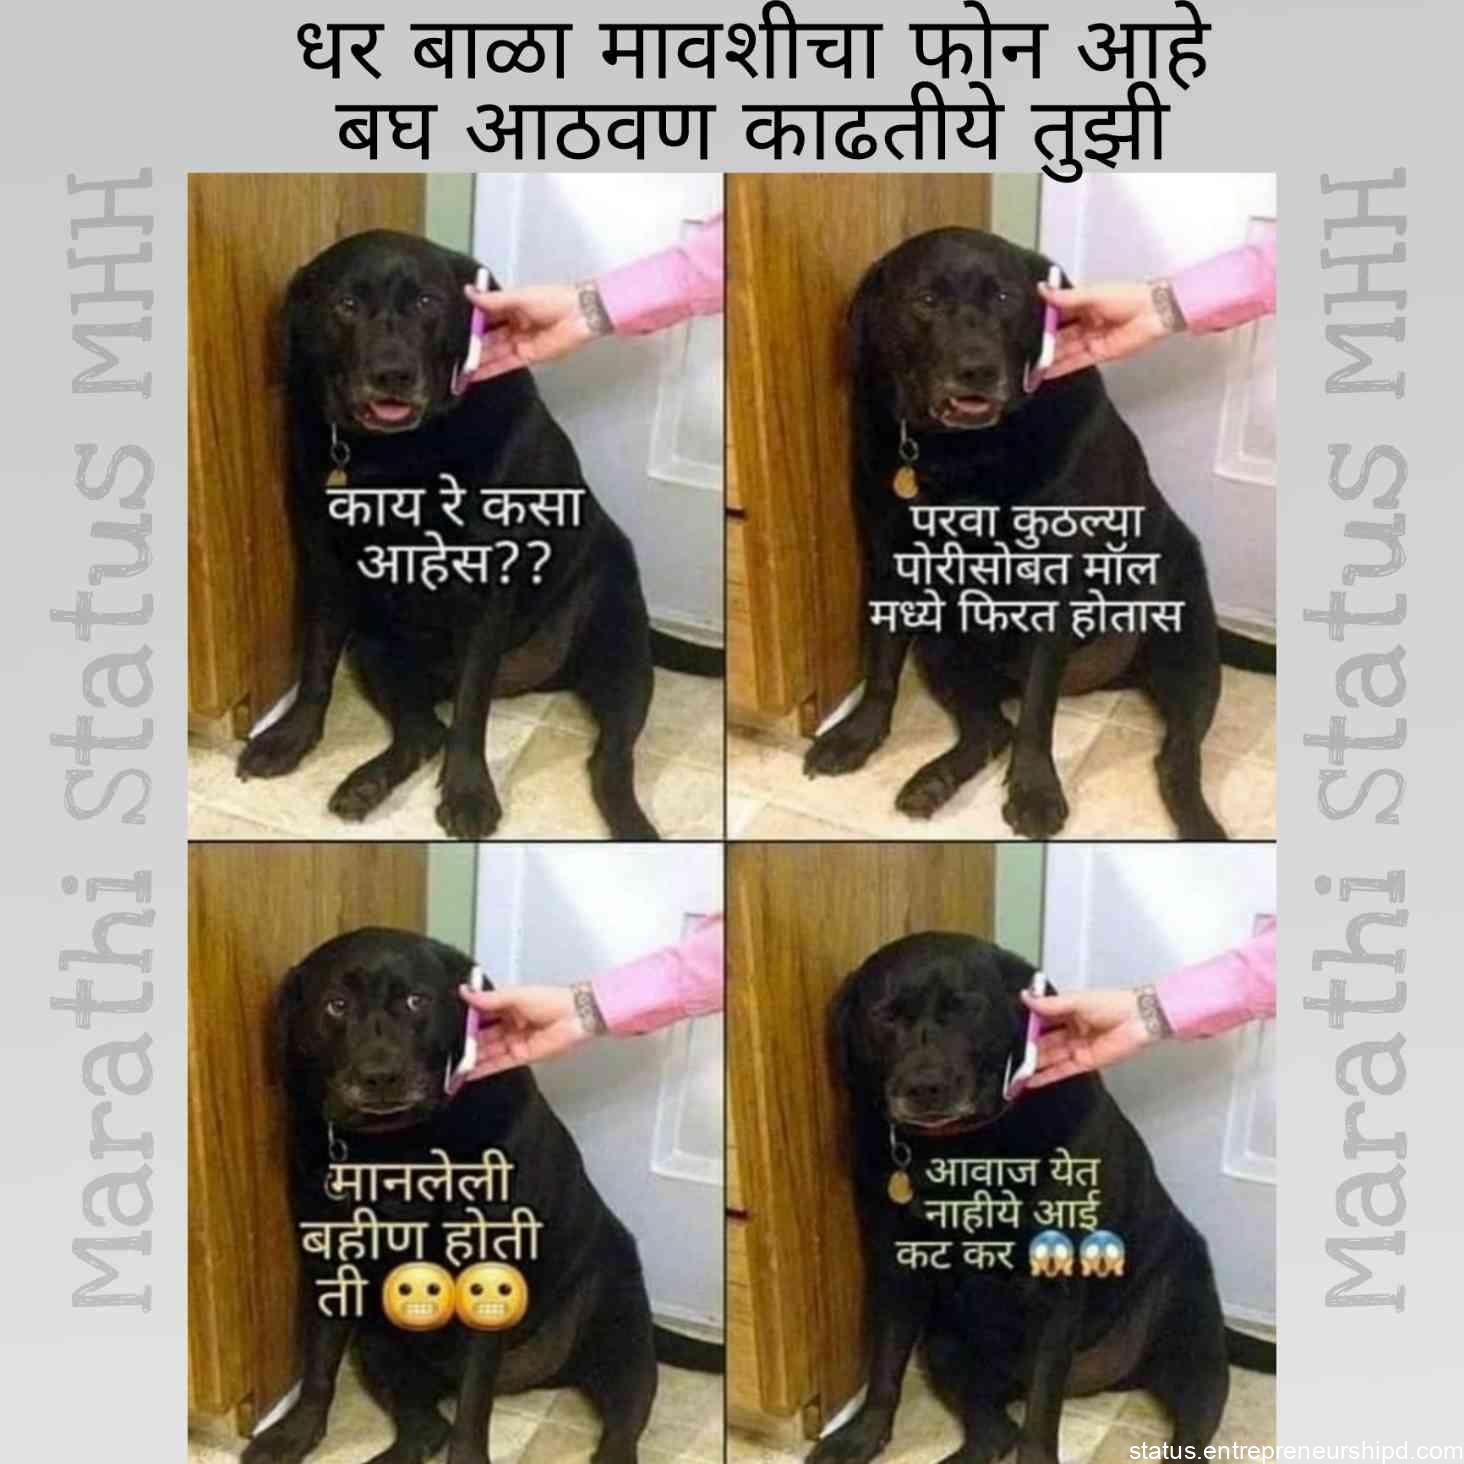 Marathi memes